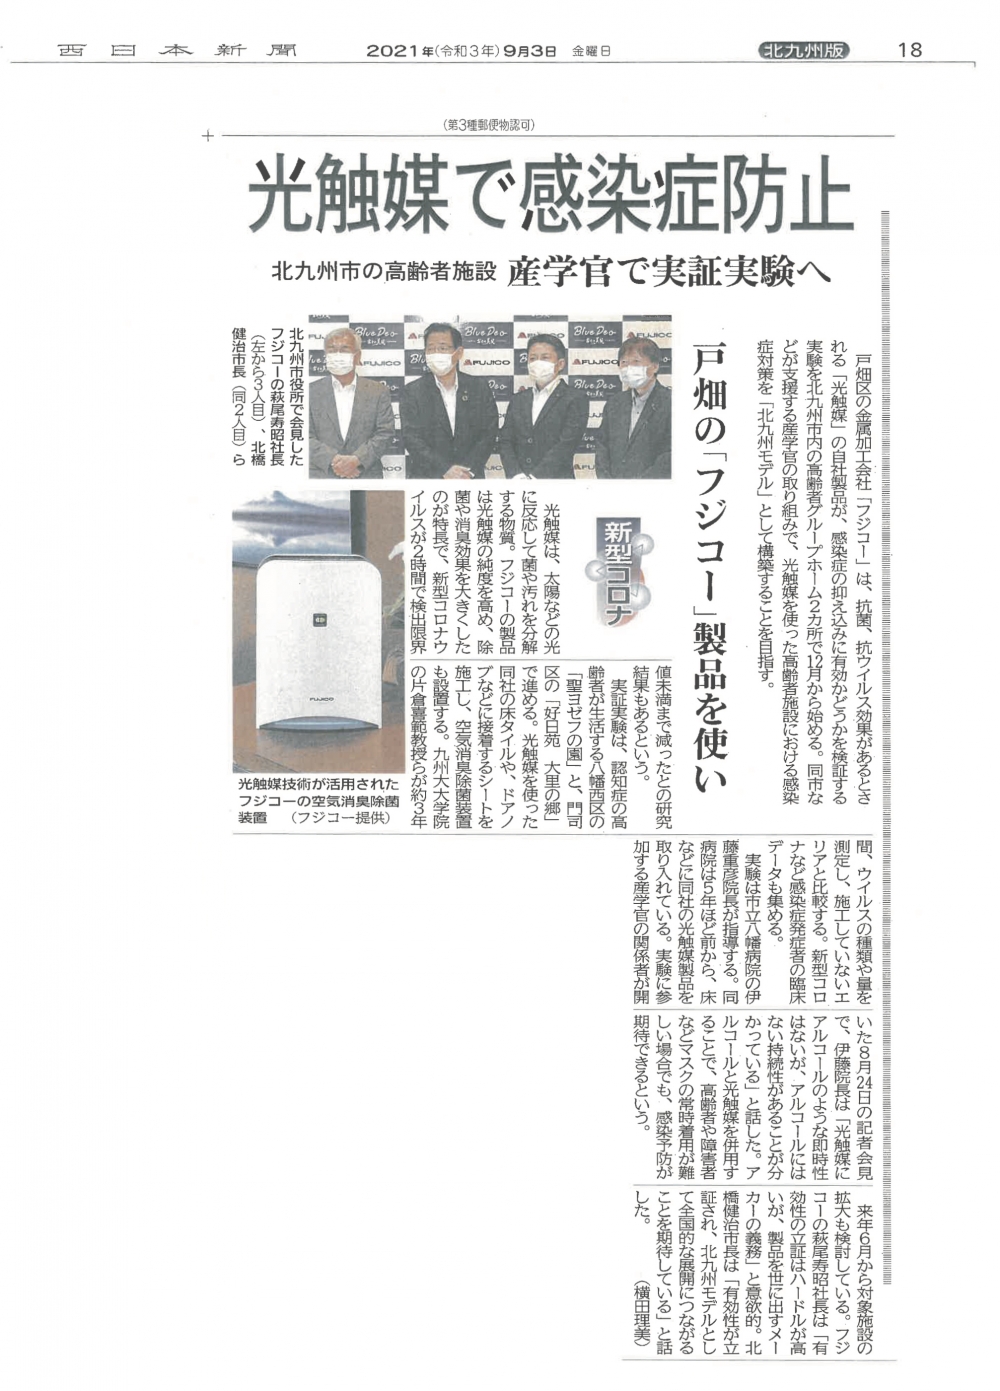 「光除菌」ブルーデオが西日本新聞で紹介されました。